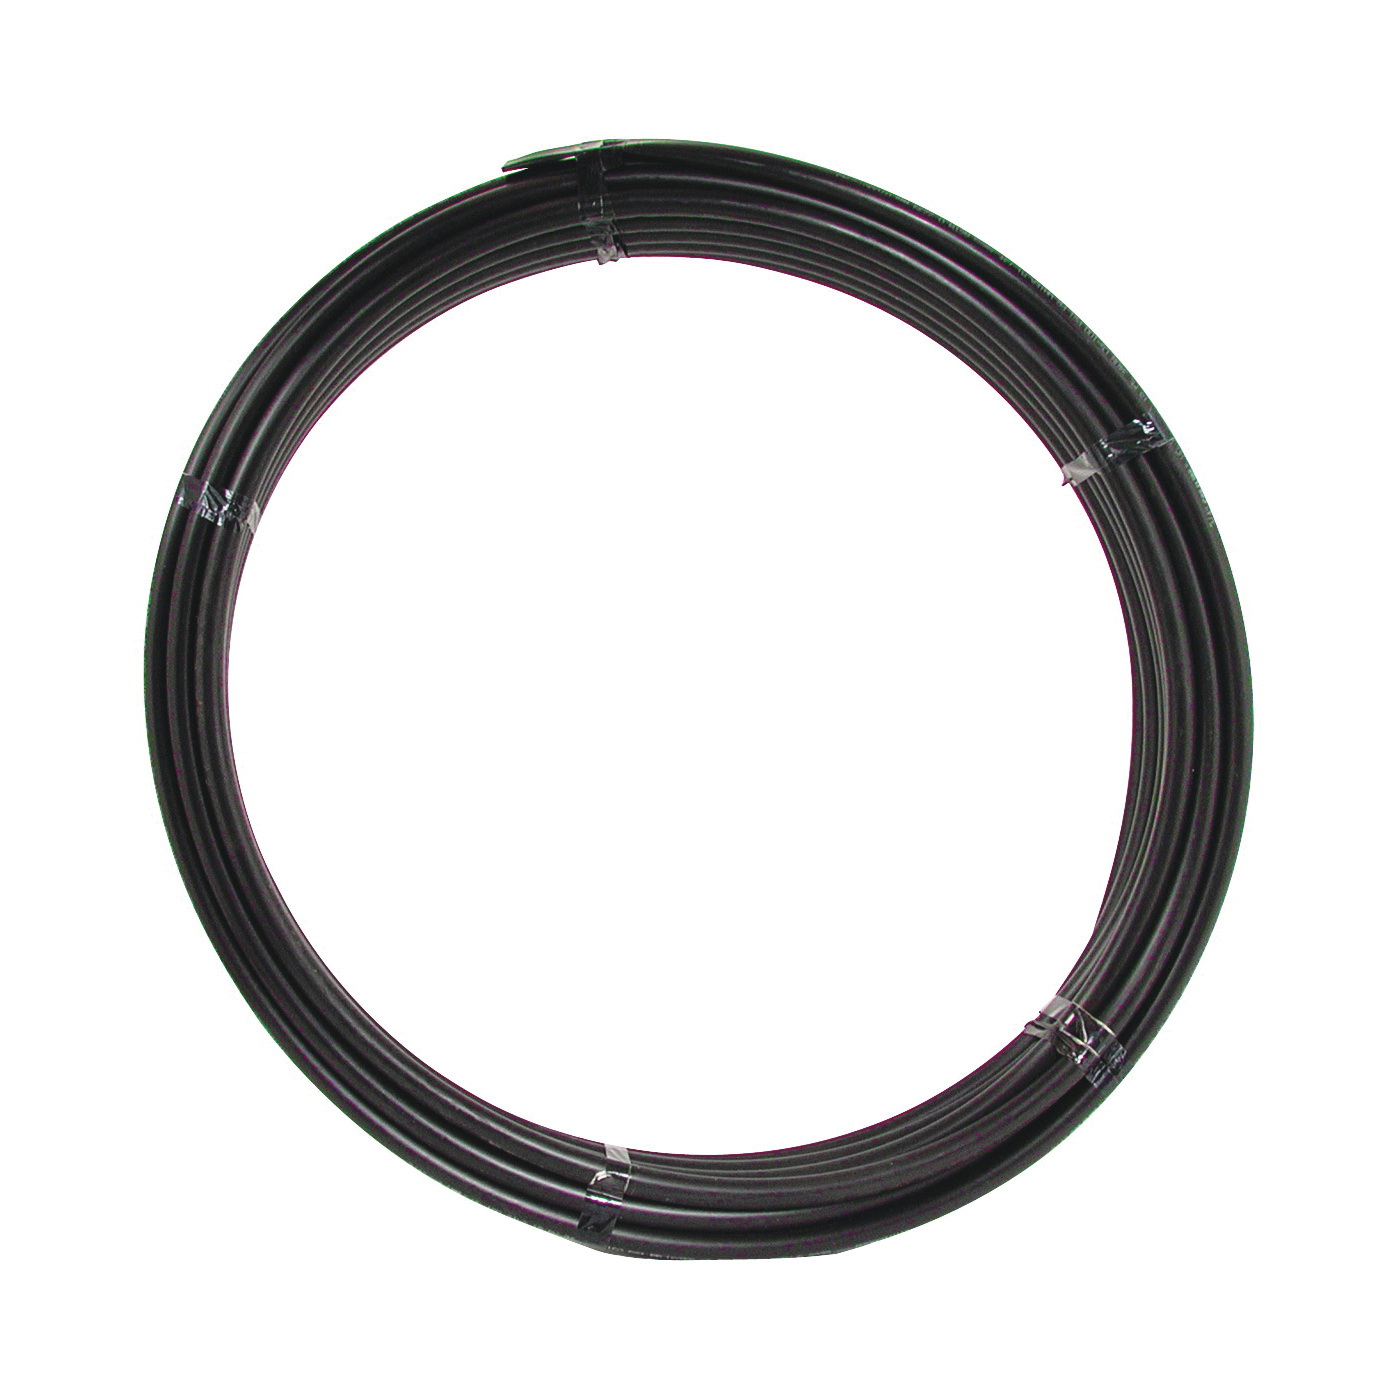 18205 Pipe Tubing, 3/4 in, Plastic, Black, 100 ft L